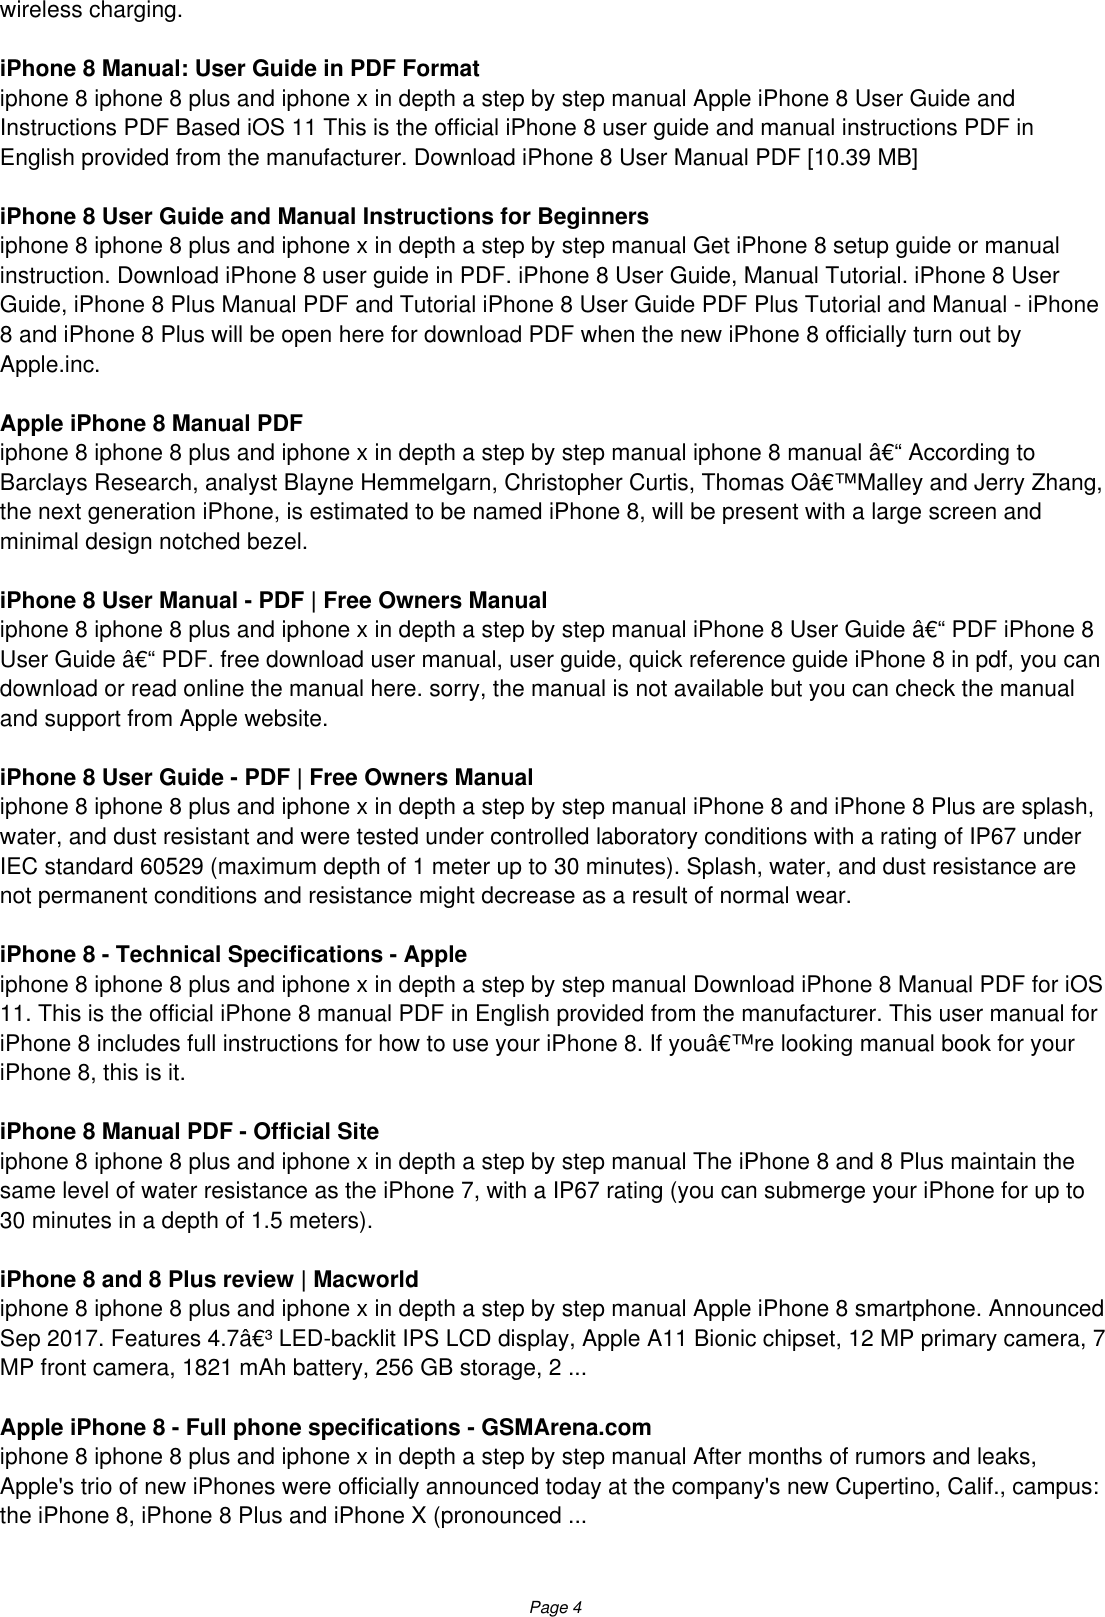 Apple Iphone 4 User Manual Pdf Download